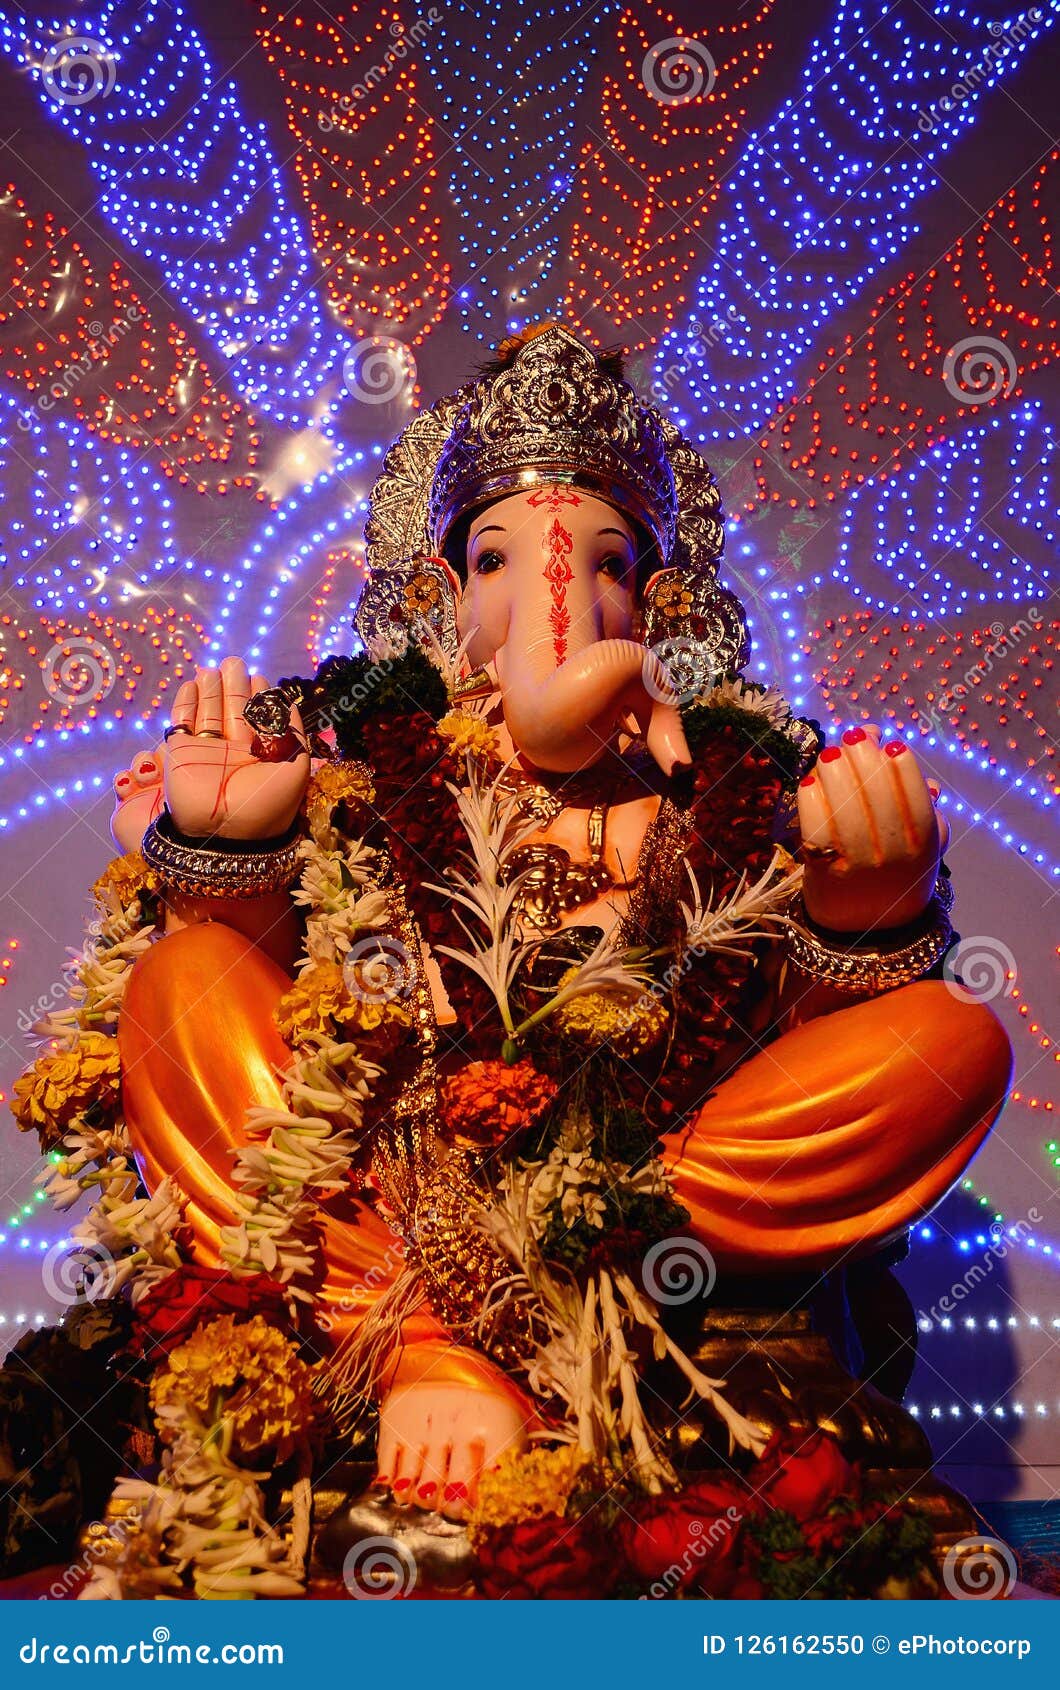 Idol of Lord Ganesha,Pune, Maharashtra, India Stock Photo - Image of ...